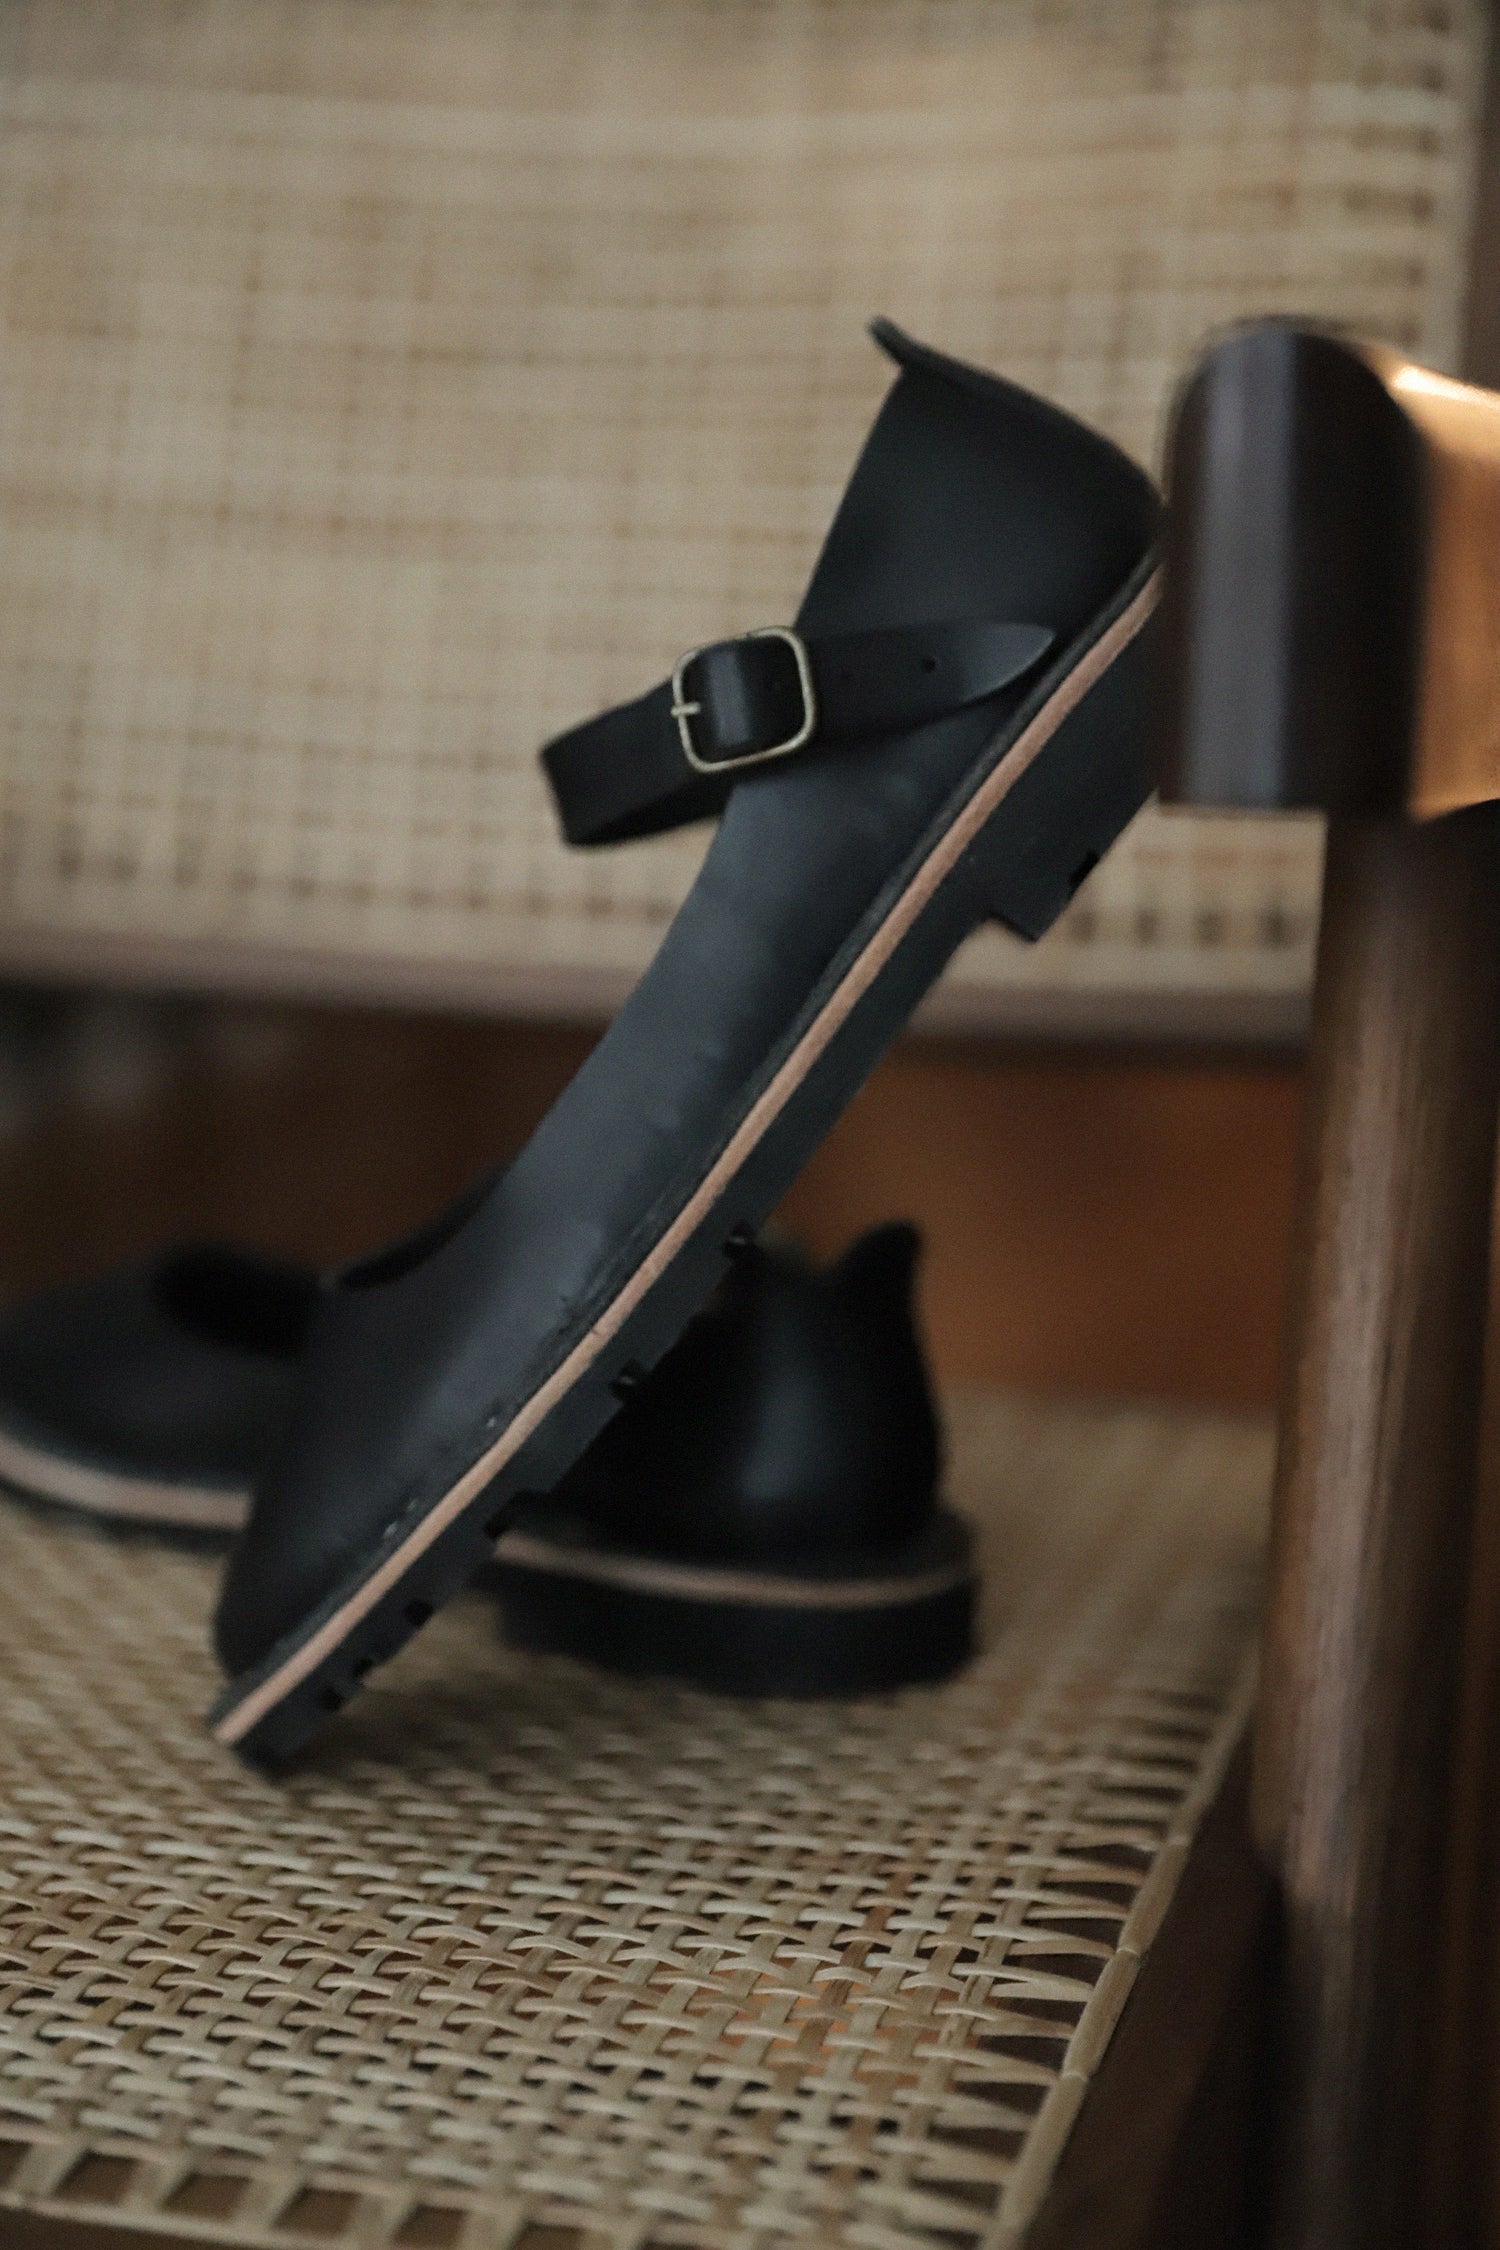 STEVE MONO - Artisanal Sandals 10/16 BLACK